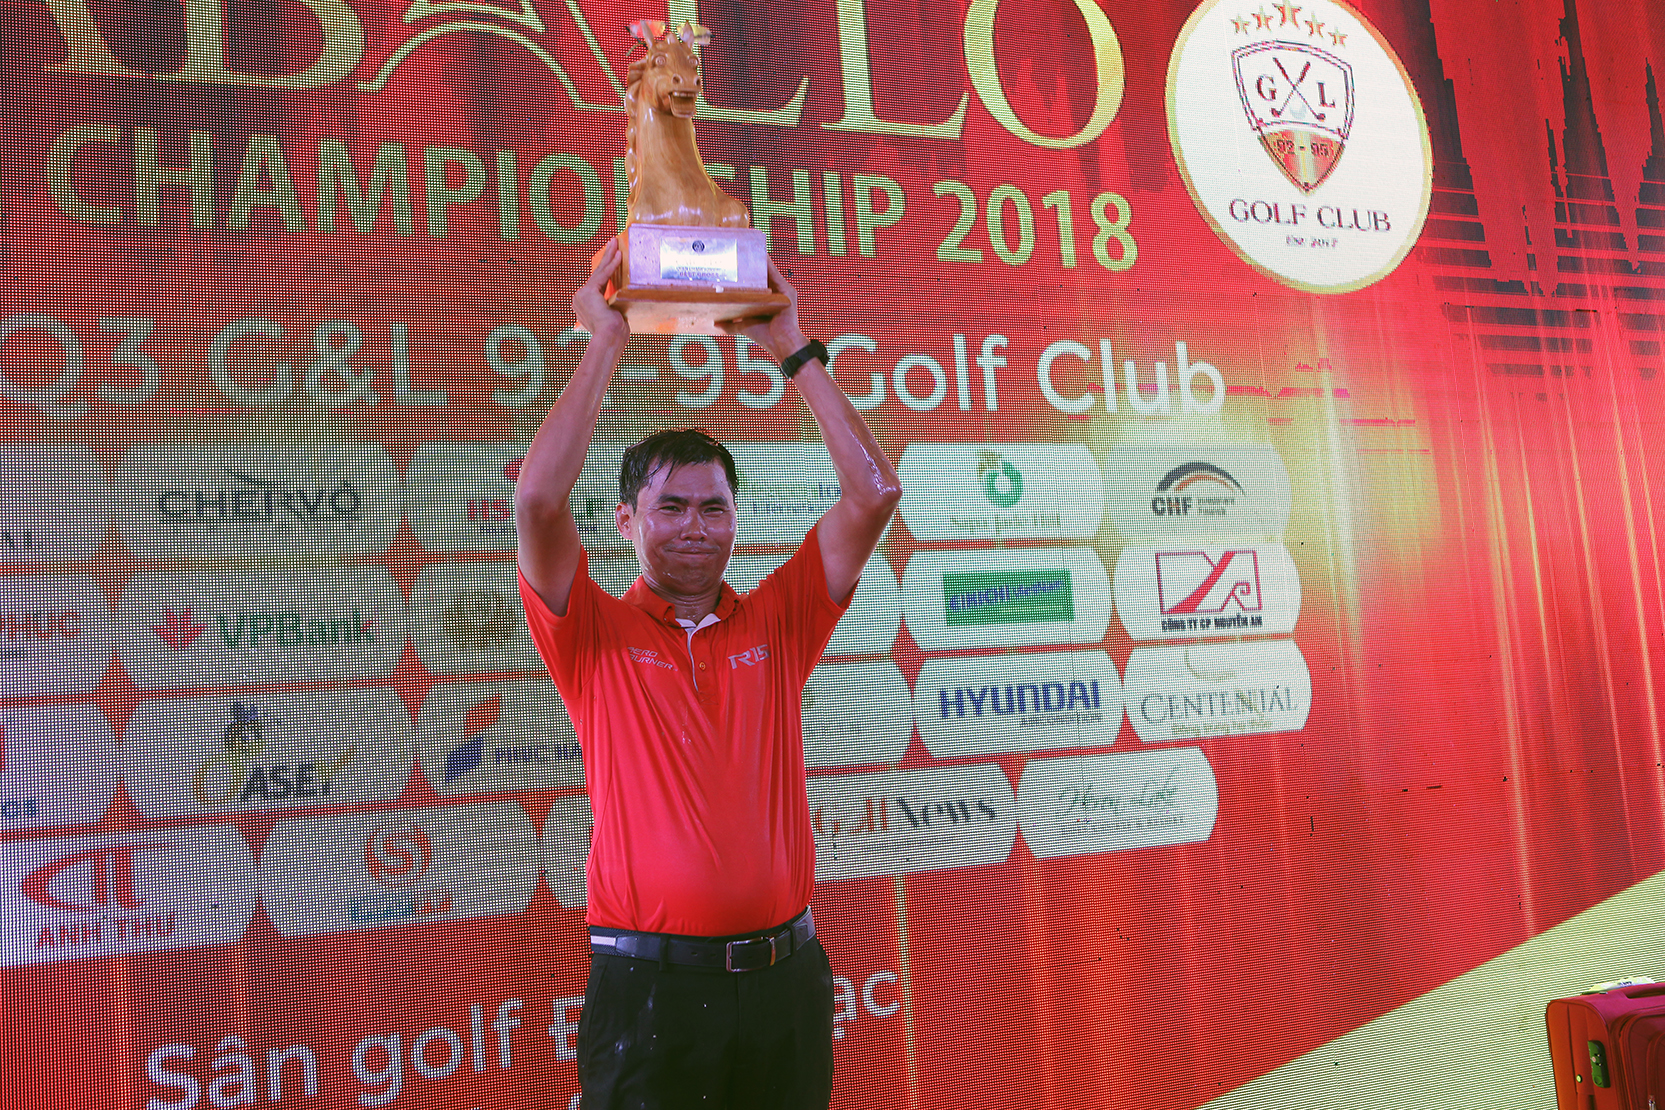 Giải Caballo Open Championship 2018: Golfer Nguyễn Văn Mạnh xuất sắc đoạt cúp vô địch